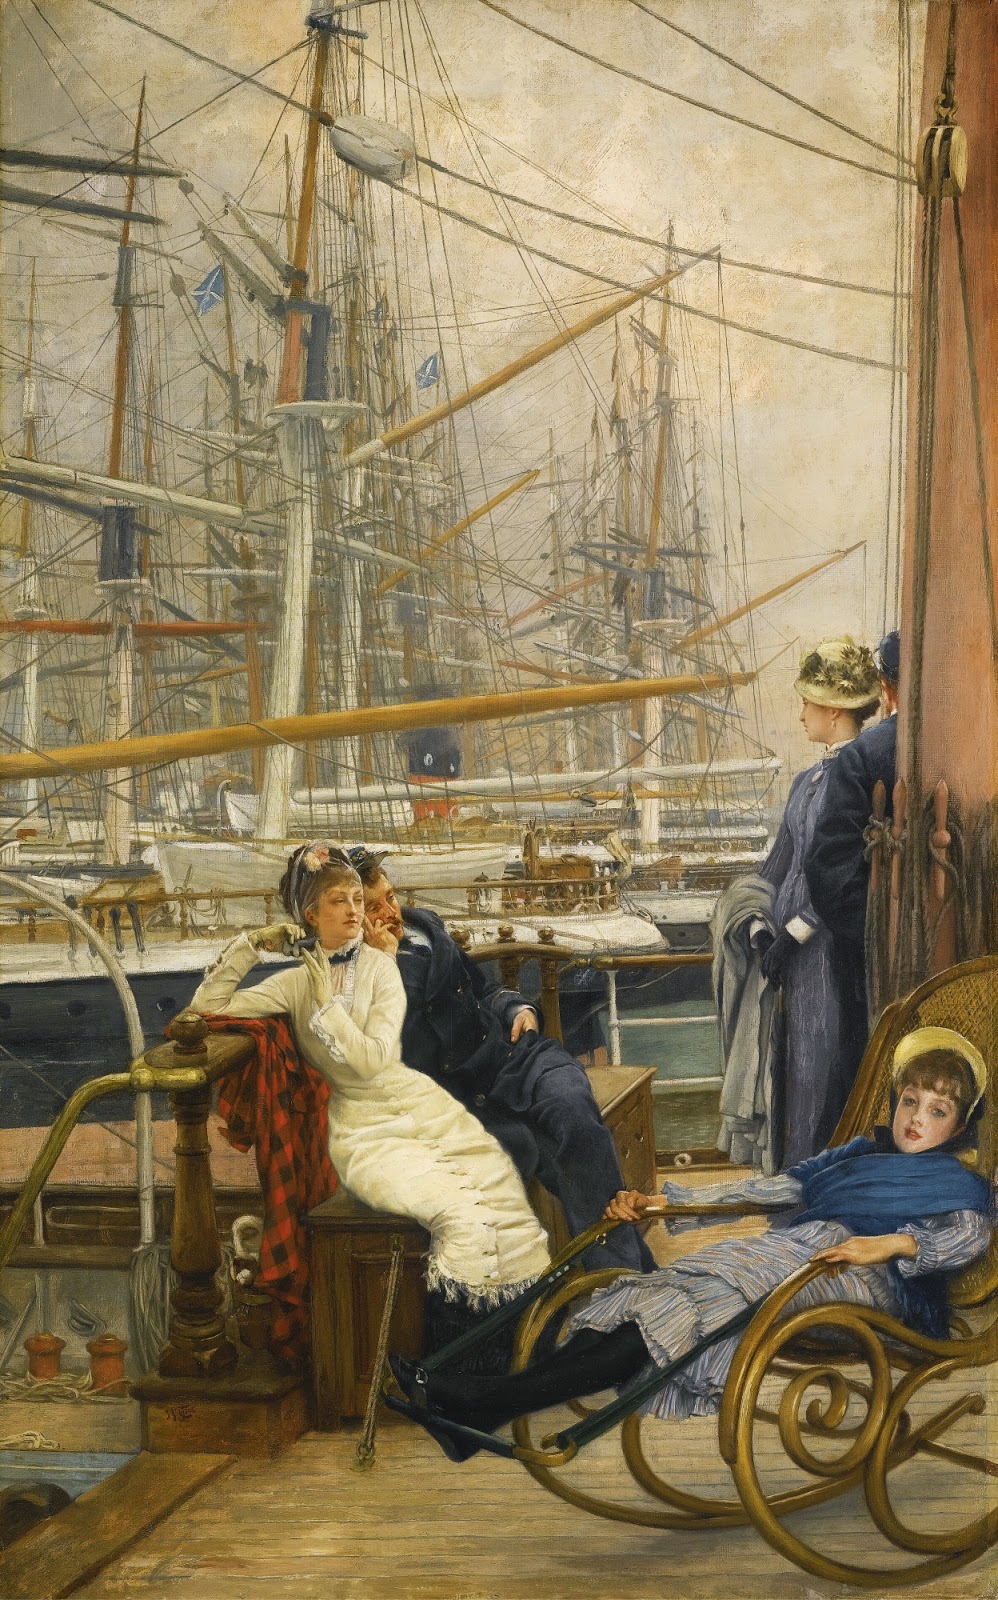 James+Tissot-1836-1902 (27).jpg